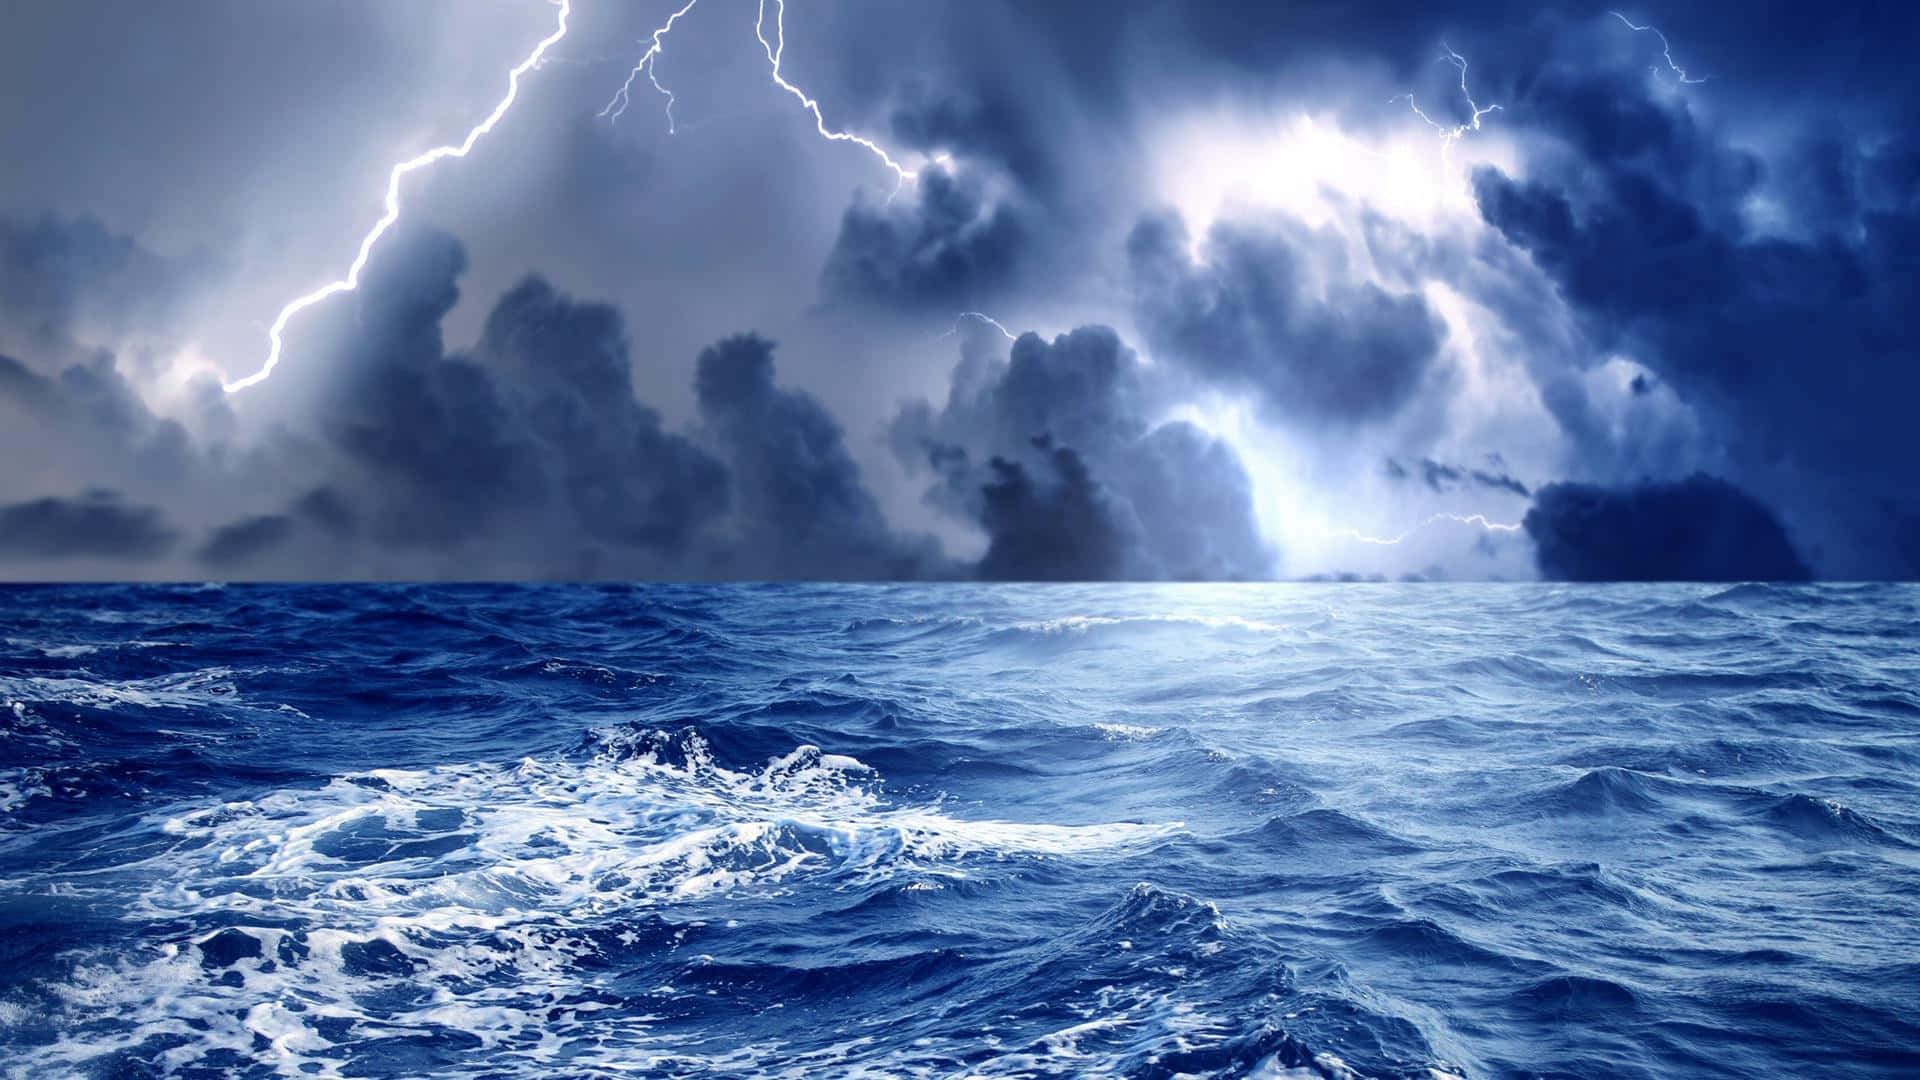 En dødelig storm, som slår mod havets bølger. Wallpaper